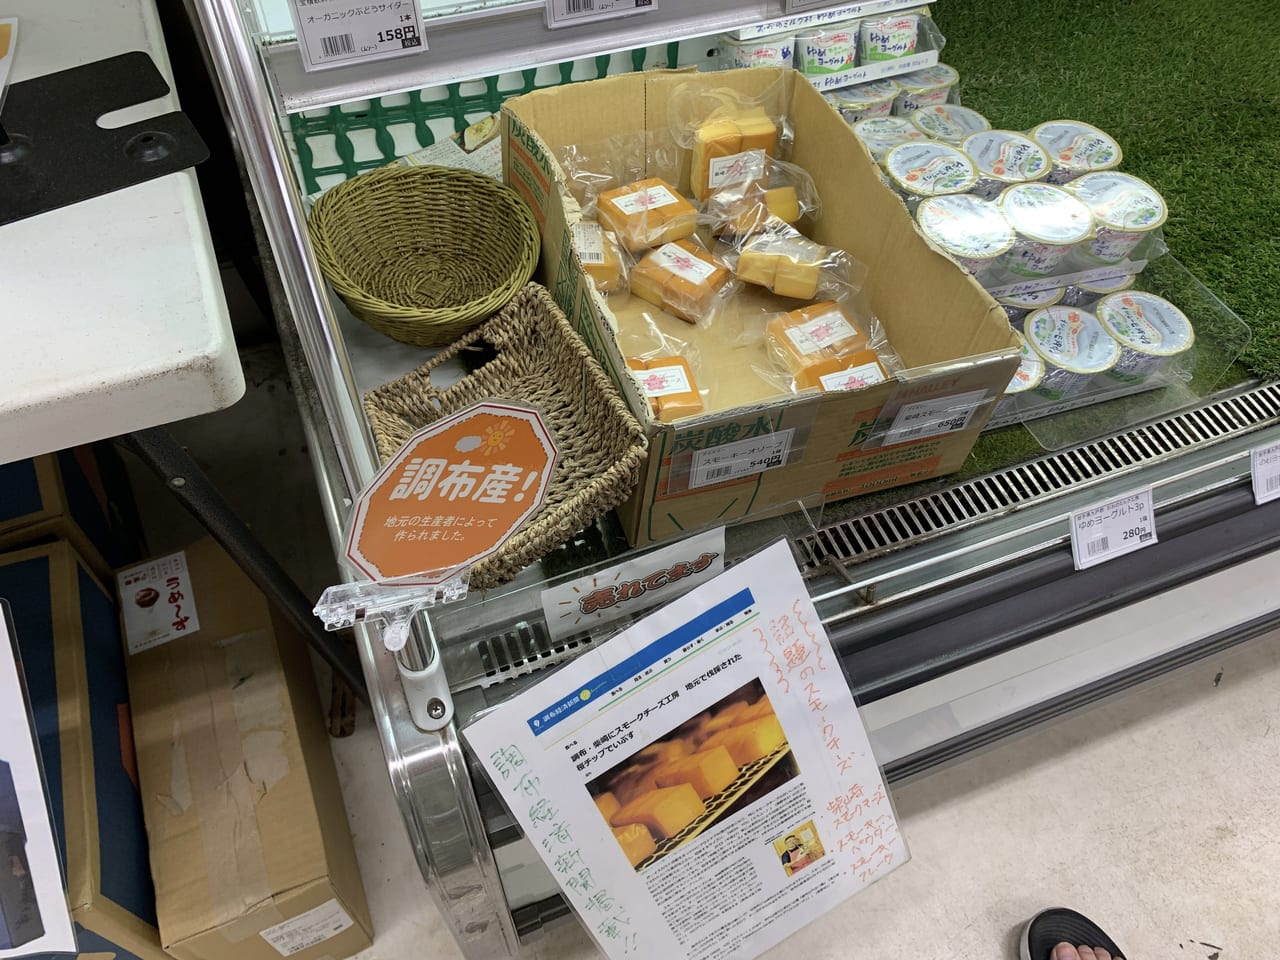 柴崎にオープンして話題となったお店のスモークチーズも販売。